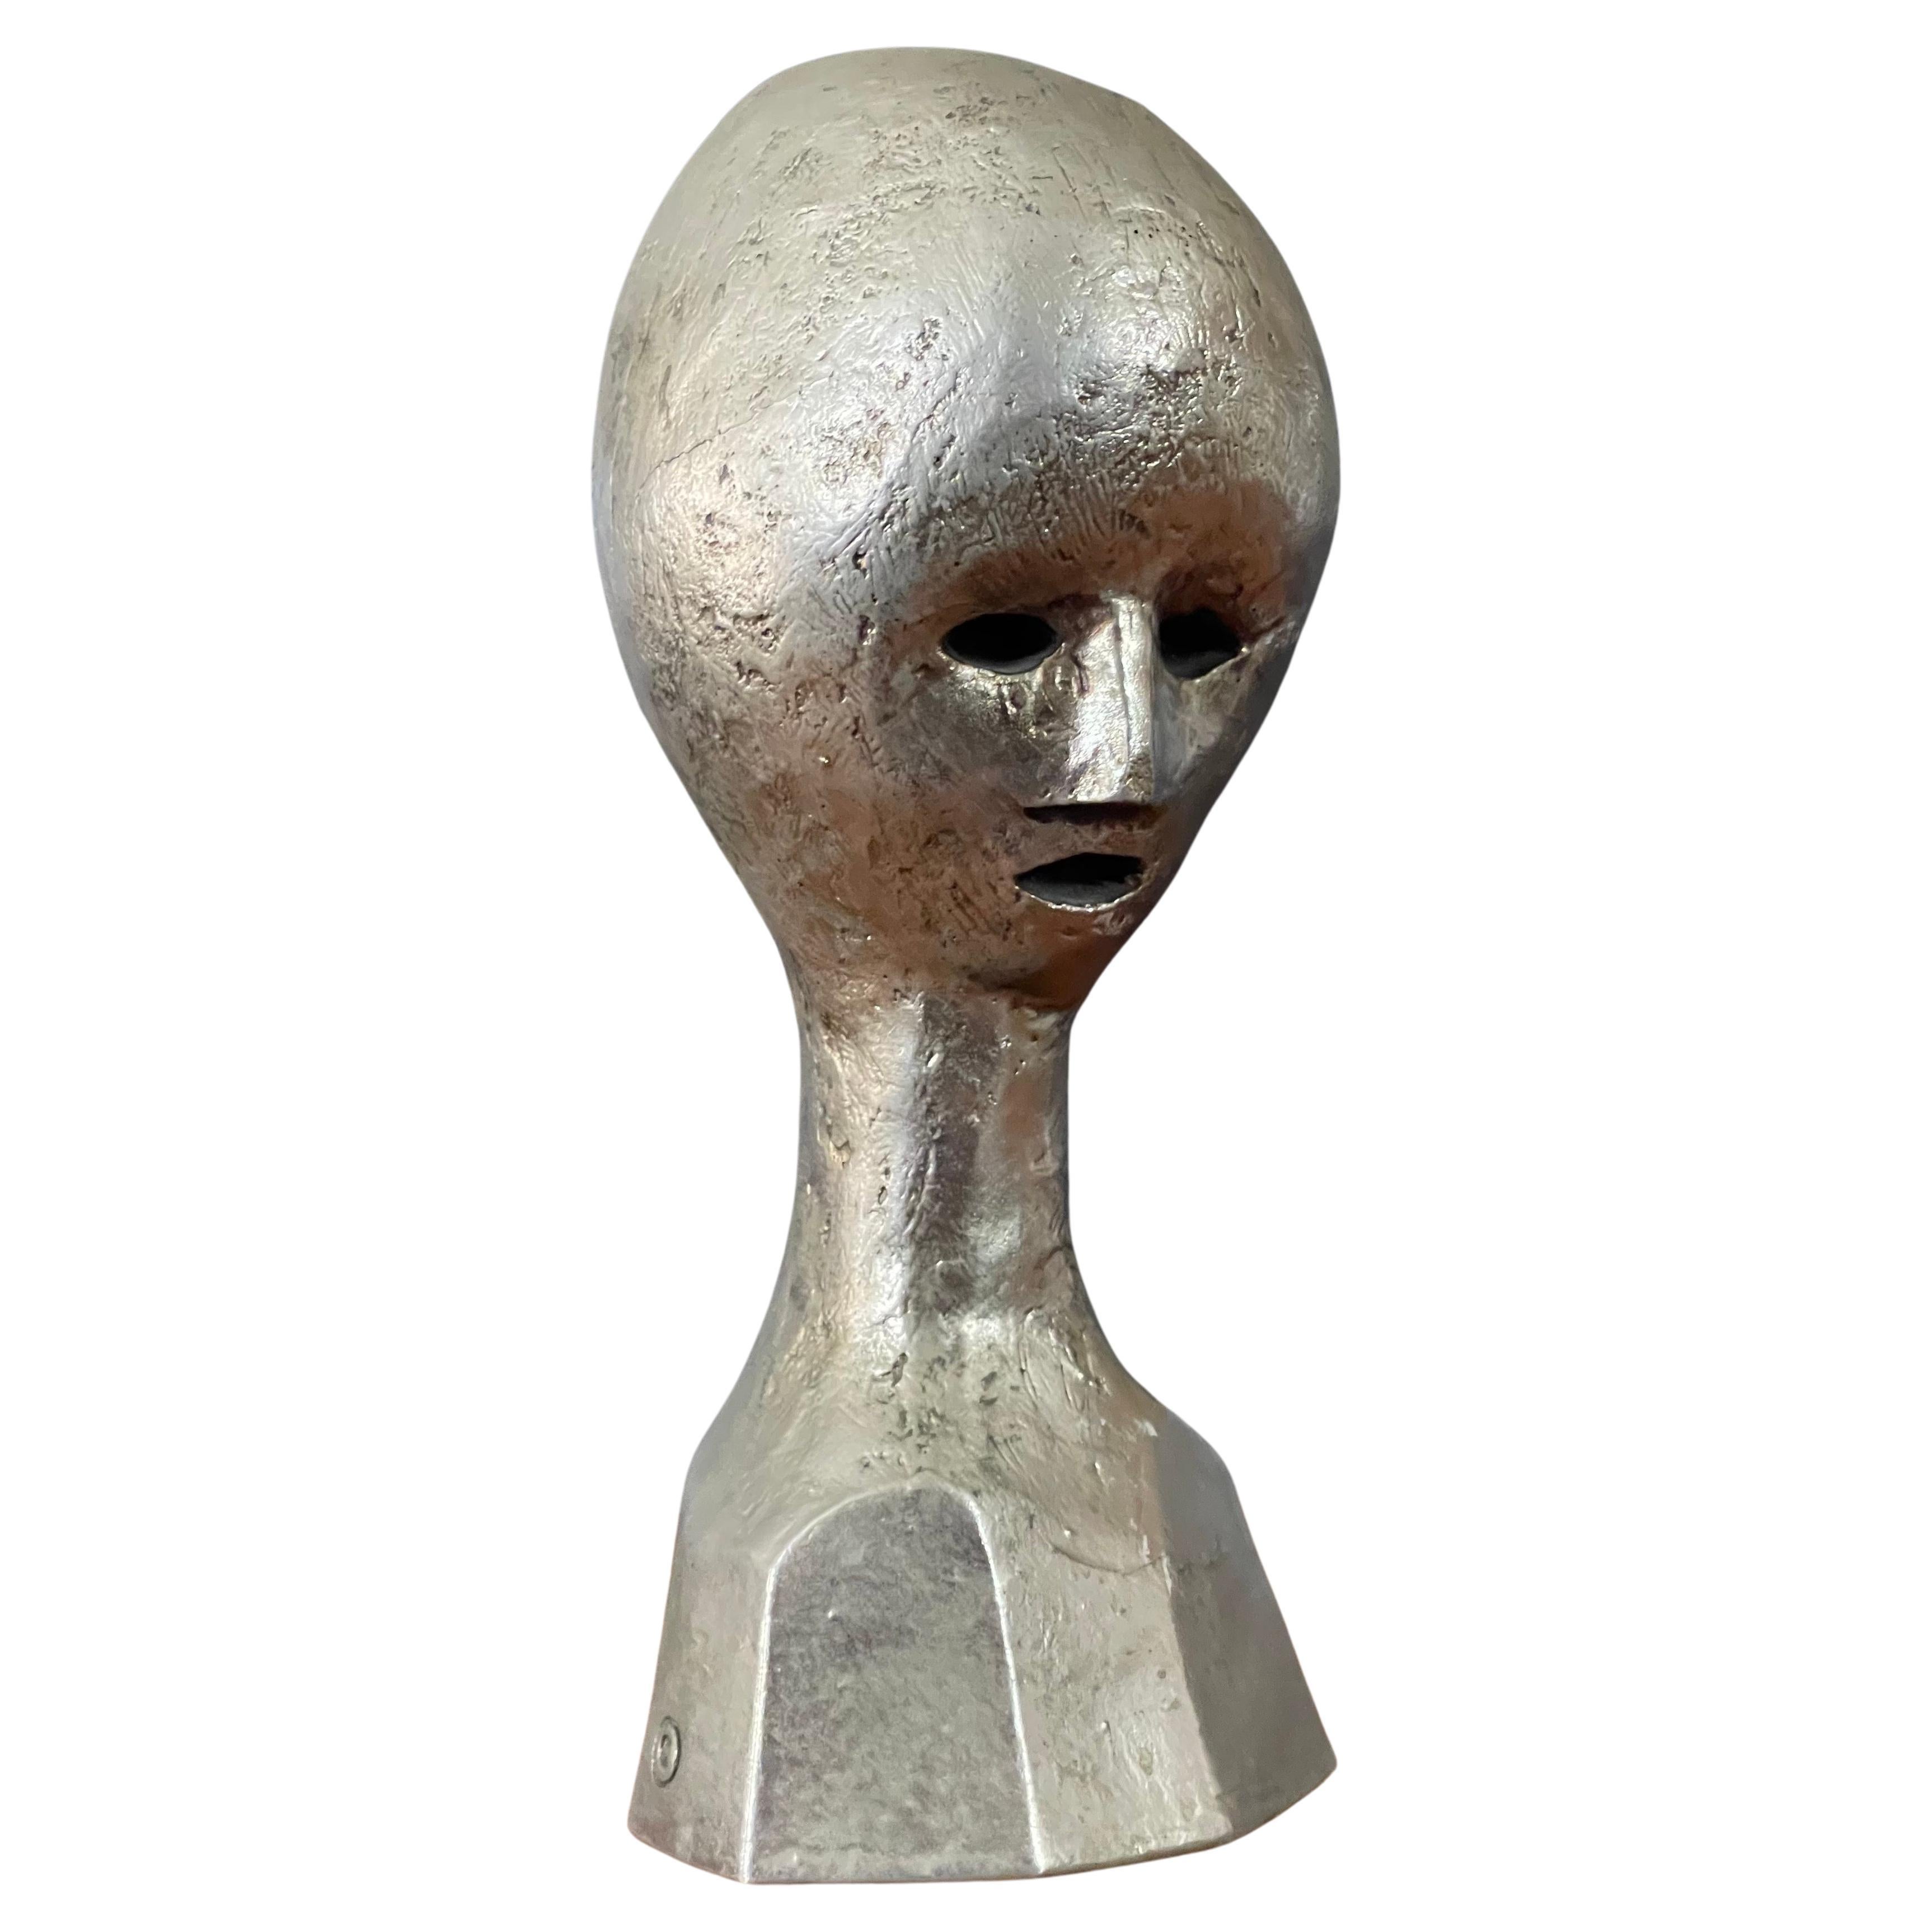 Un buste / une tête d'extraterrestre moderniste très cool de MCM par Andre Minaux, vers les années 1970. Cette rare sculpture du célèbre designer français Andre Minaux est réalisée en fonte de métal sur bronze avec une finition argentée. Elle est en